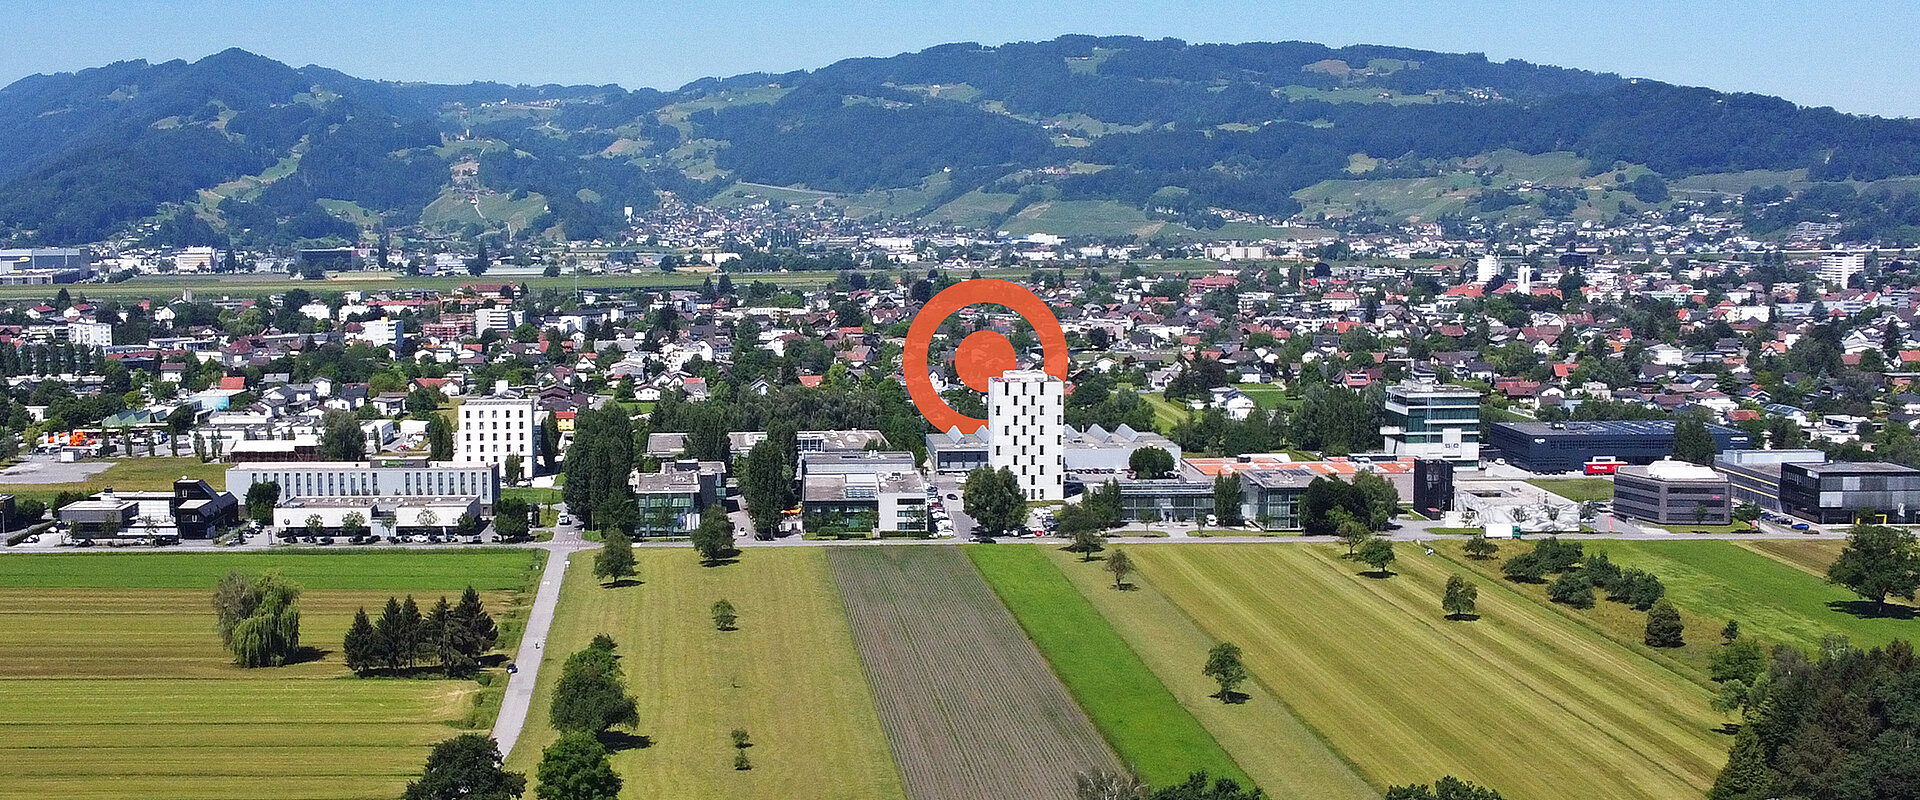 Drohnenaufnahme vom Betriebsgebiet Millennium Park RHEINTAL in Lustenau mit orangem PRISMA Logoelement im Hintergrund.